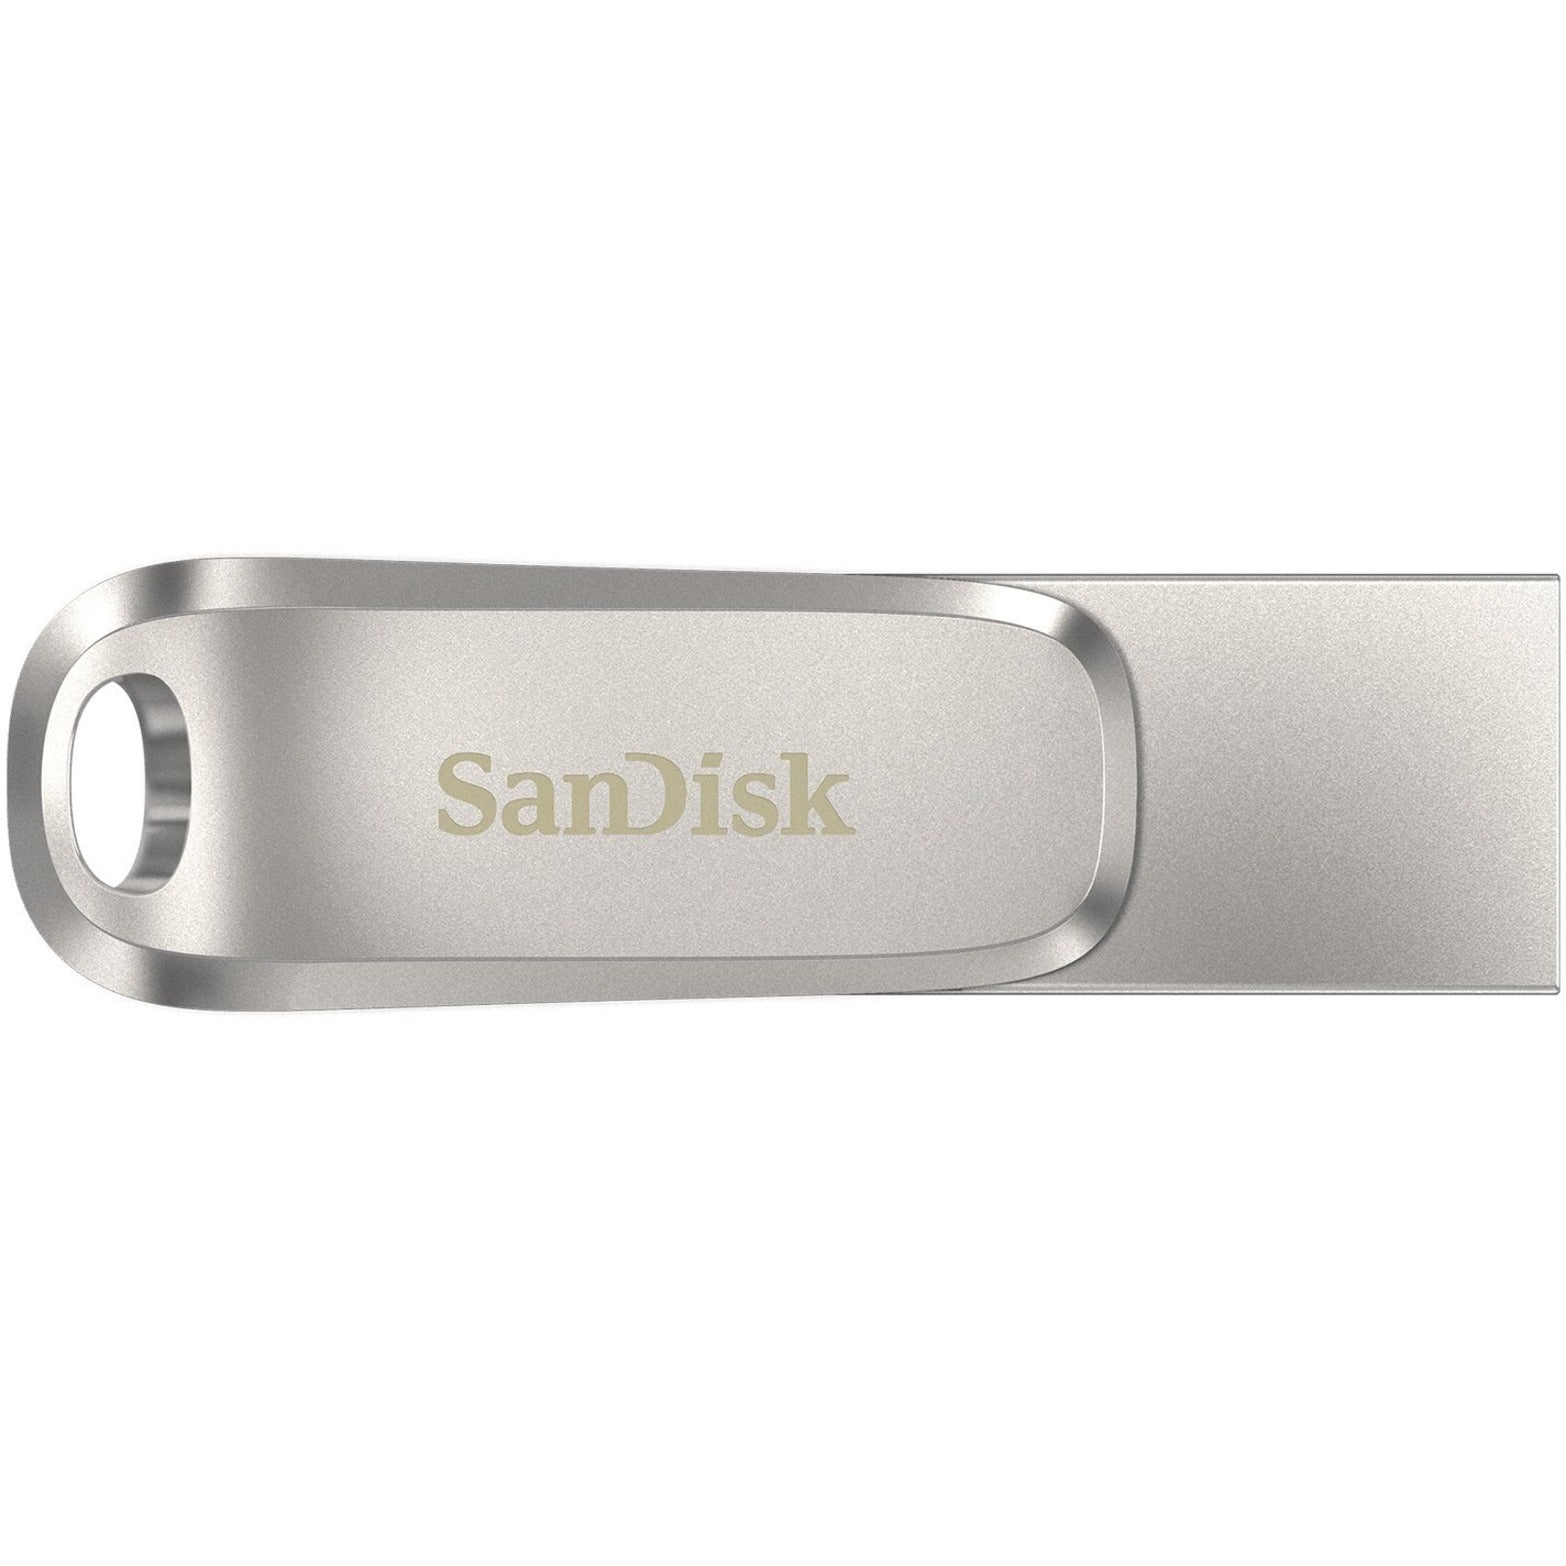 SanDisk SDDDC4-032G-A46 Ultra Dual Drive Luxe USB TIPO-C - 32GB Transferencia de Datos y Almacenamiento de Alta Velocidad   Marca: SanDisk   Traducción de la marca: SanDisk